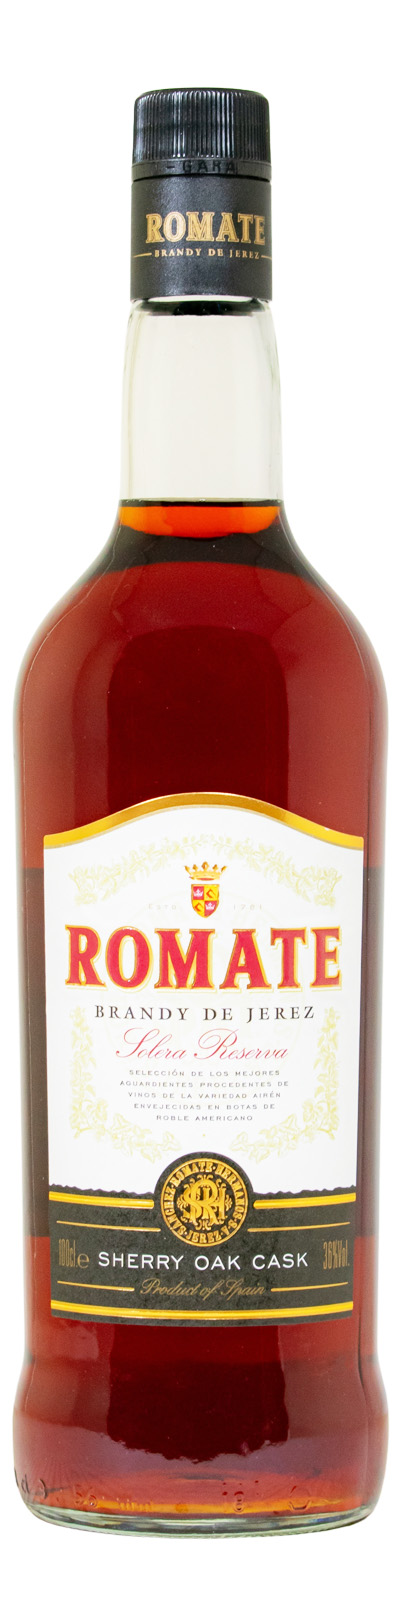 Romate Brandy Solera Reserva Brandy (1L) günstig kaufen